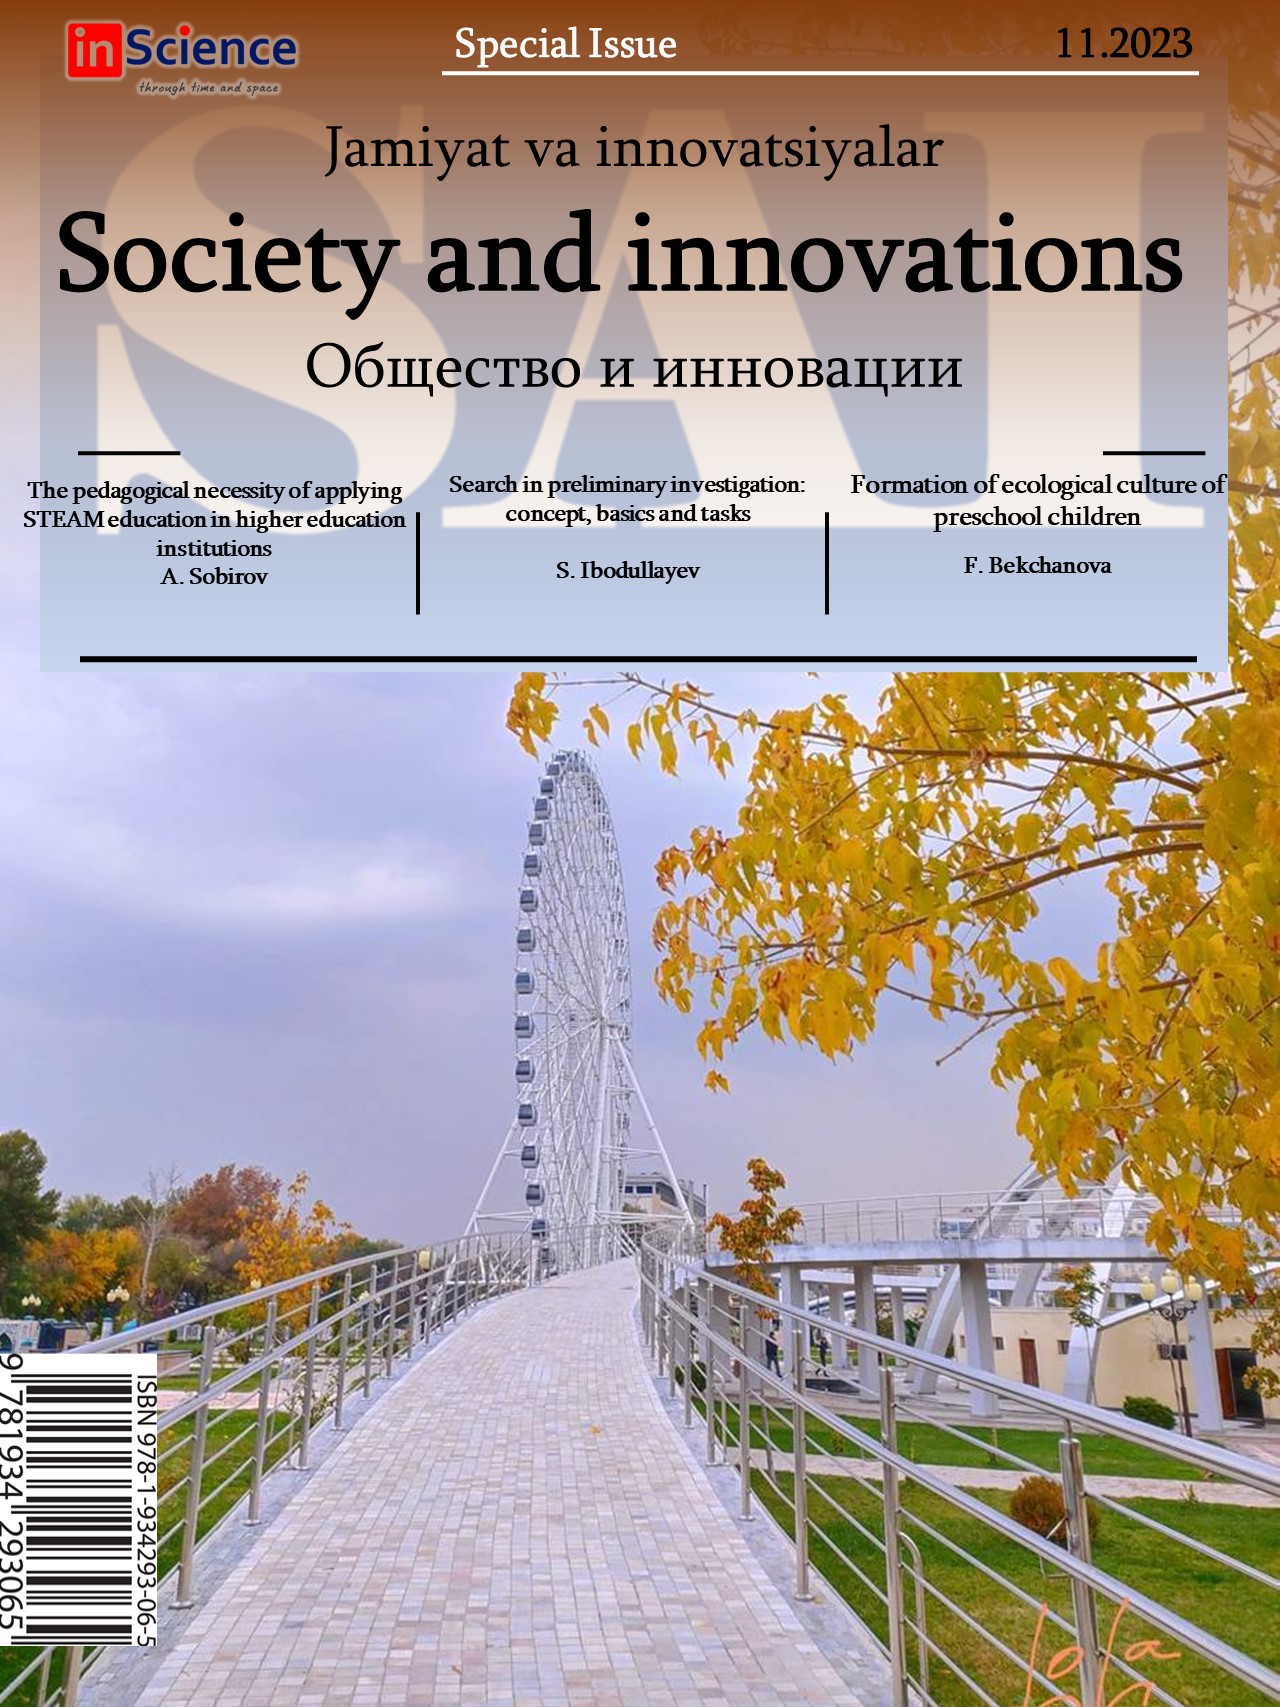 						Показать Том 4 № 10/S (2023): Спецвыпуск междисциплинарного электронного научного журнала «Общество и инновации»
					